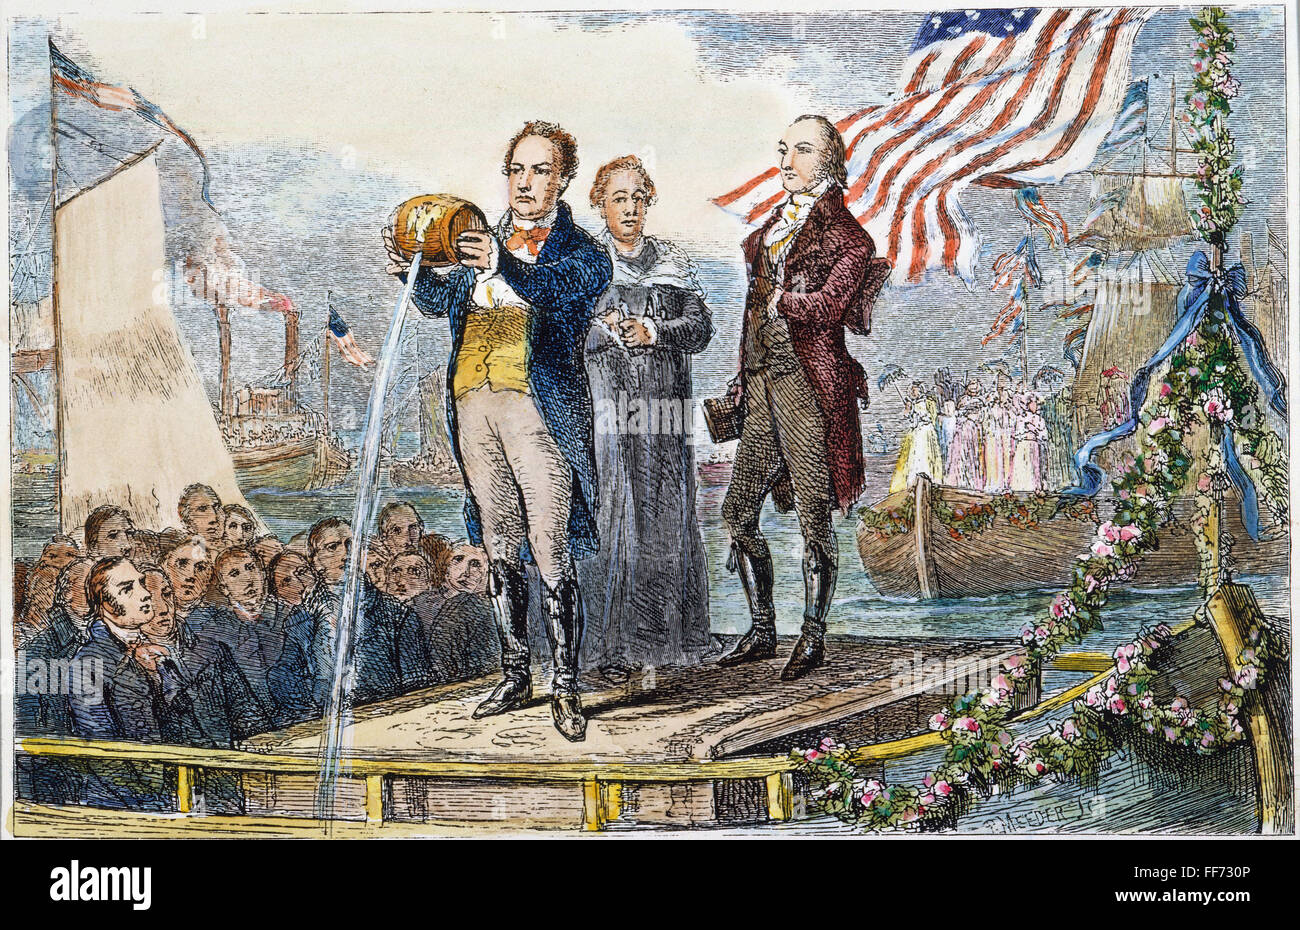 Canale Erie apertura, 1825. /Nnuova York governatore DeWitt Clinton versando acqua dal Lago Erie nell'Oceano Atlantico al Grand Canale Erie celebrazione nel porto di New York, 4 novembre 1825. Incisione su legno, xix secolo. Foto Stock